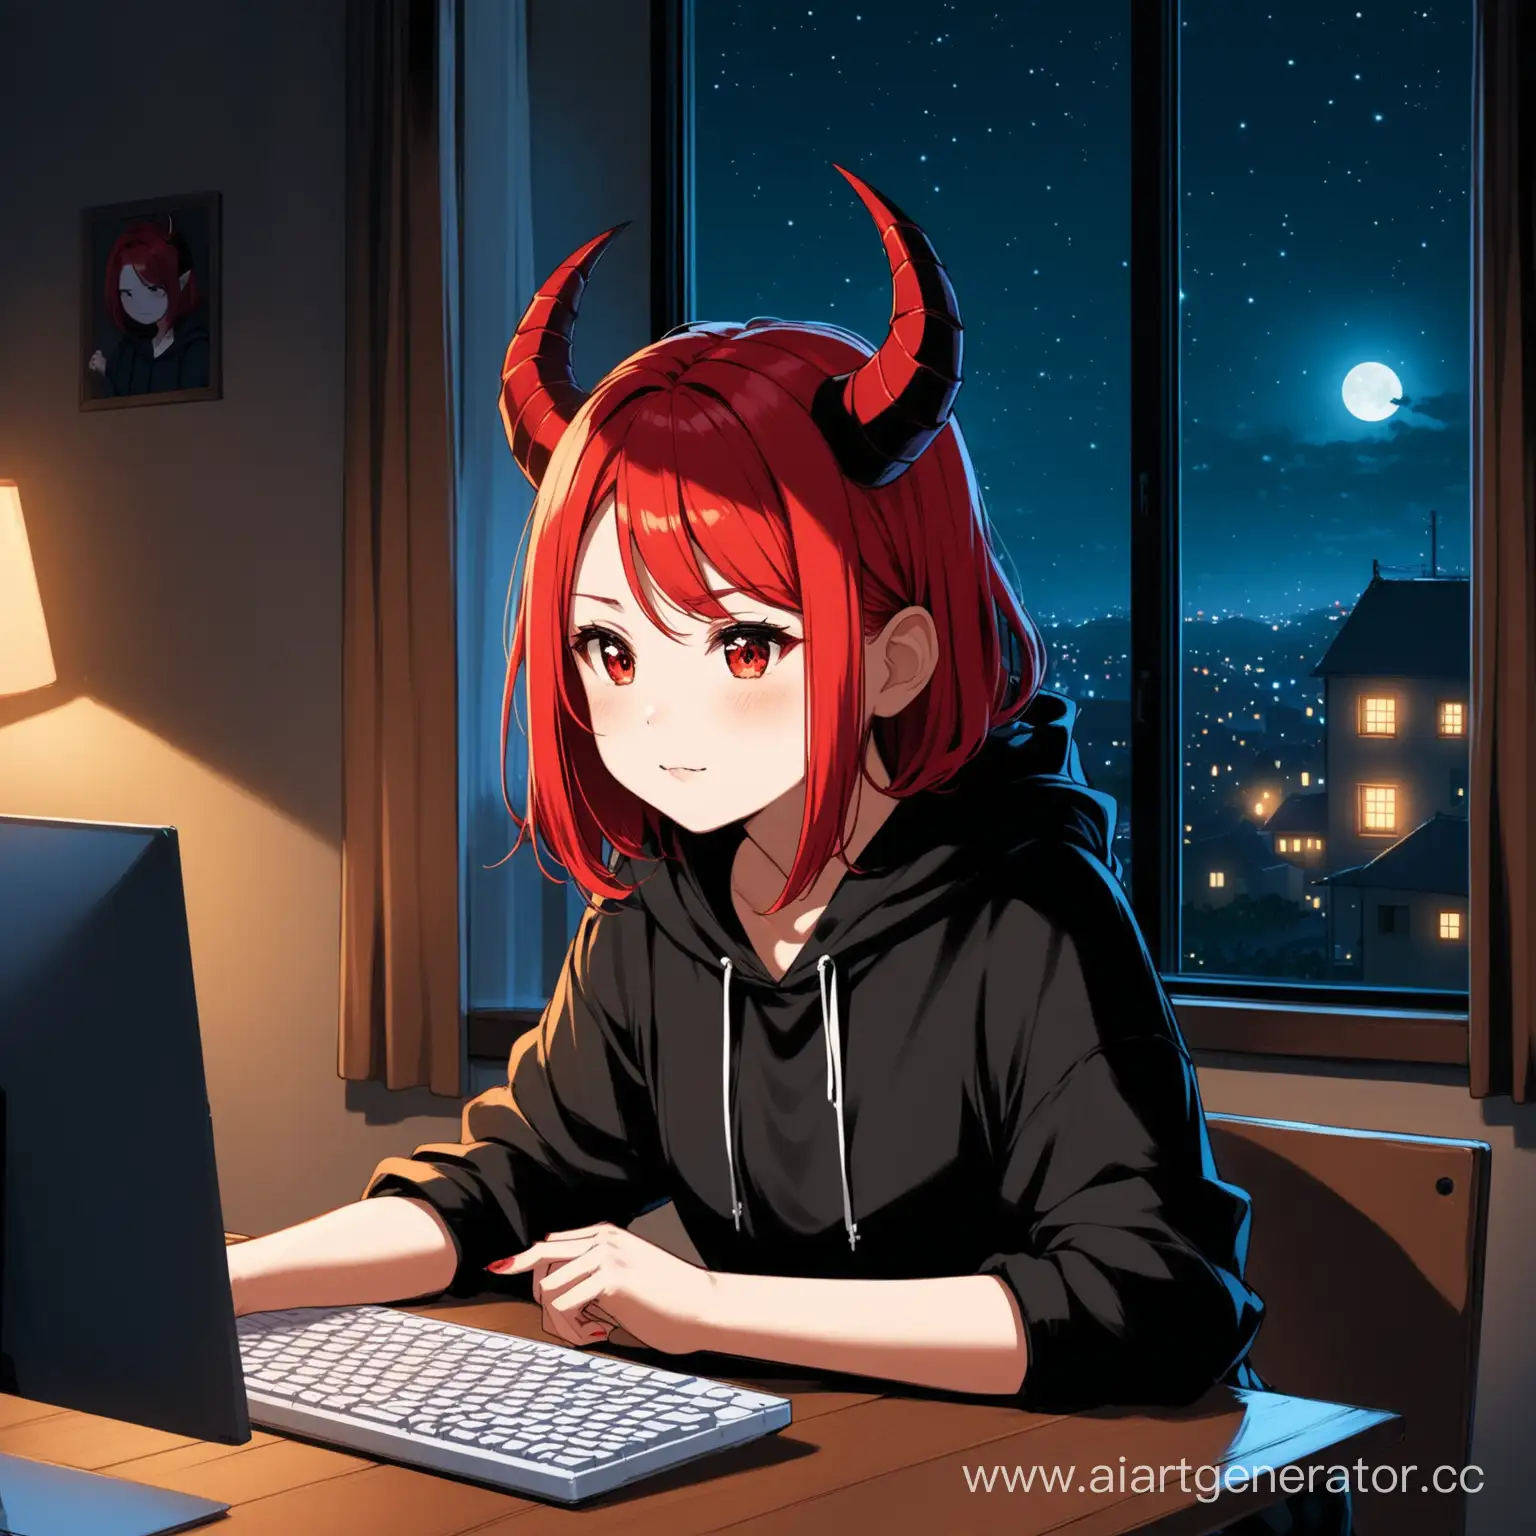 девушка с волосами до подбородка красного цвета и дьявольскими рожками  играет в компьютер, она одета в черное худи, на фоне комната ночью, на окне гирлянда